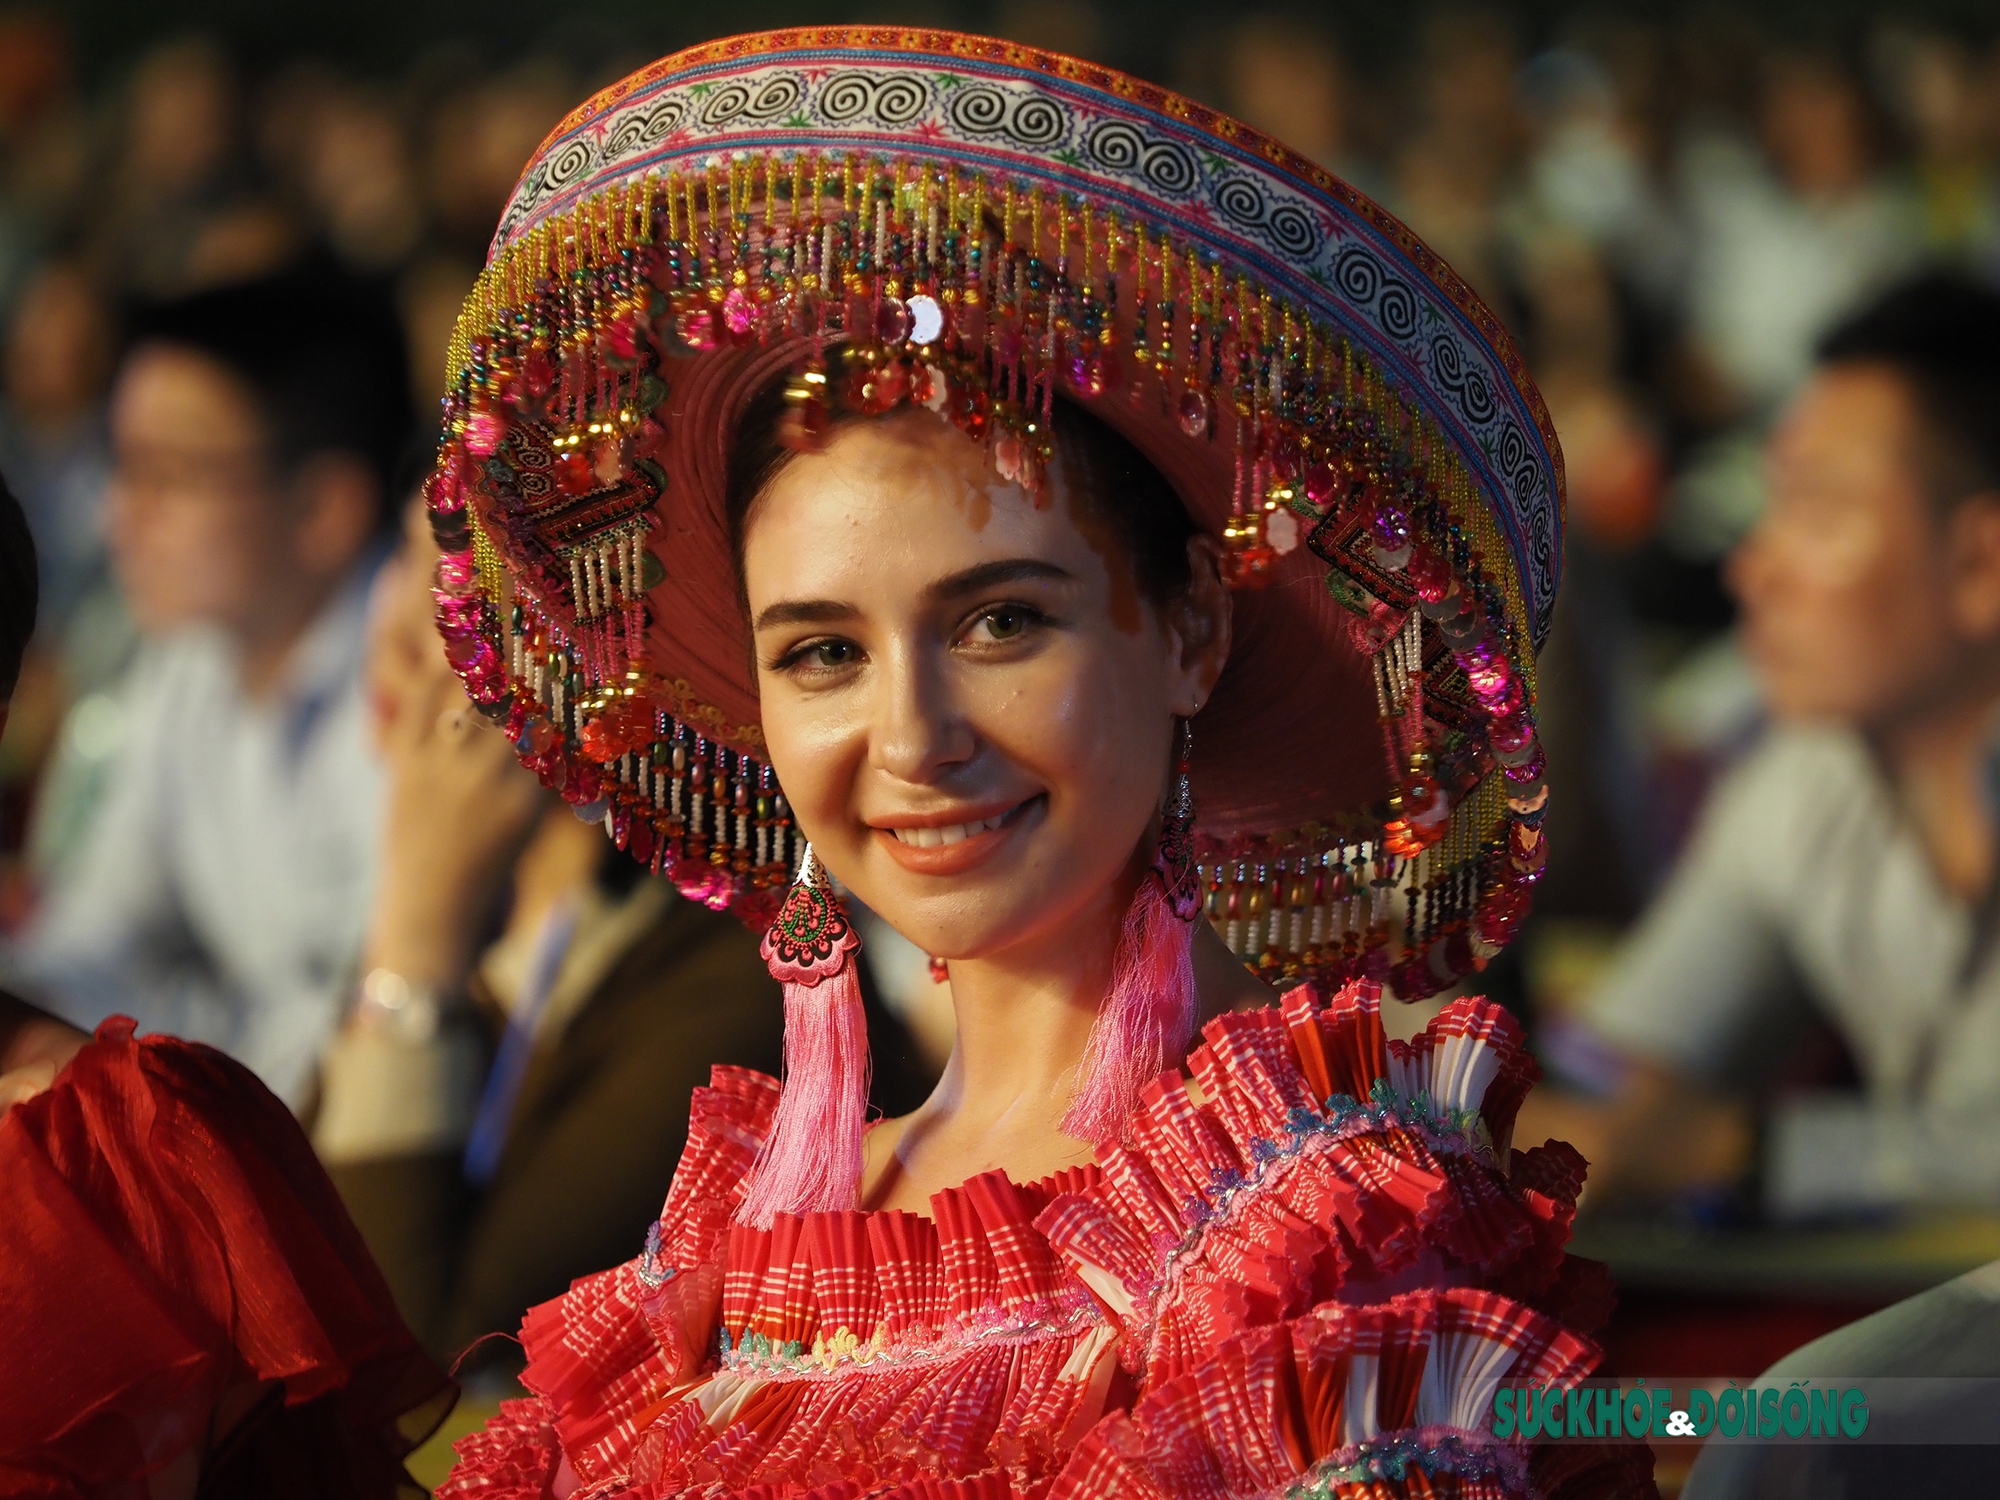 Hoa hậu Du lịch thế giới có mặt trong lễ khai mạc Festival Ninh Binh 2022 - Ảnh 6.